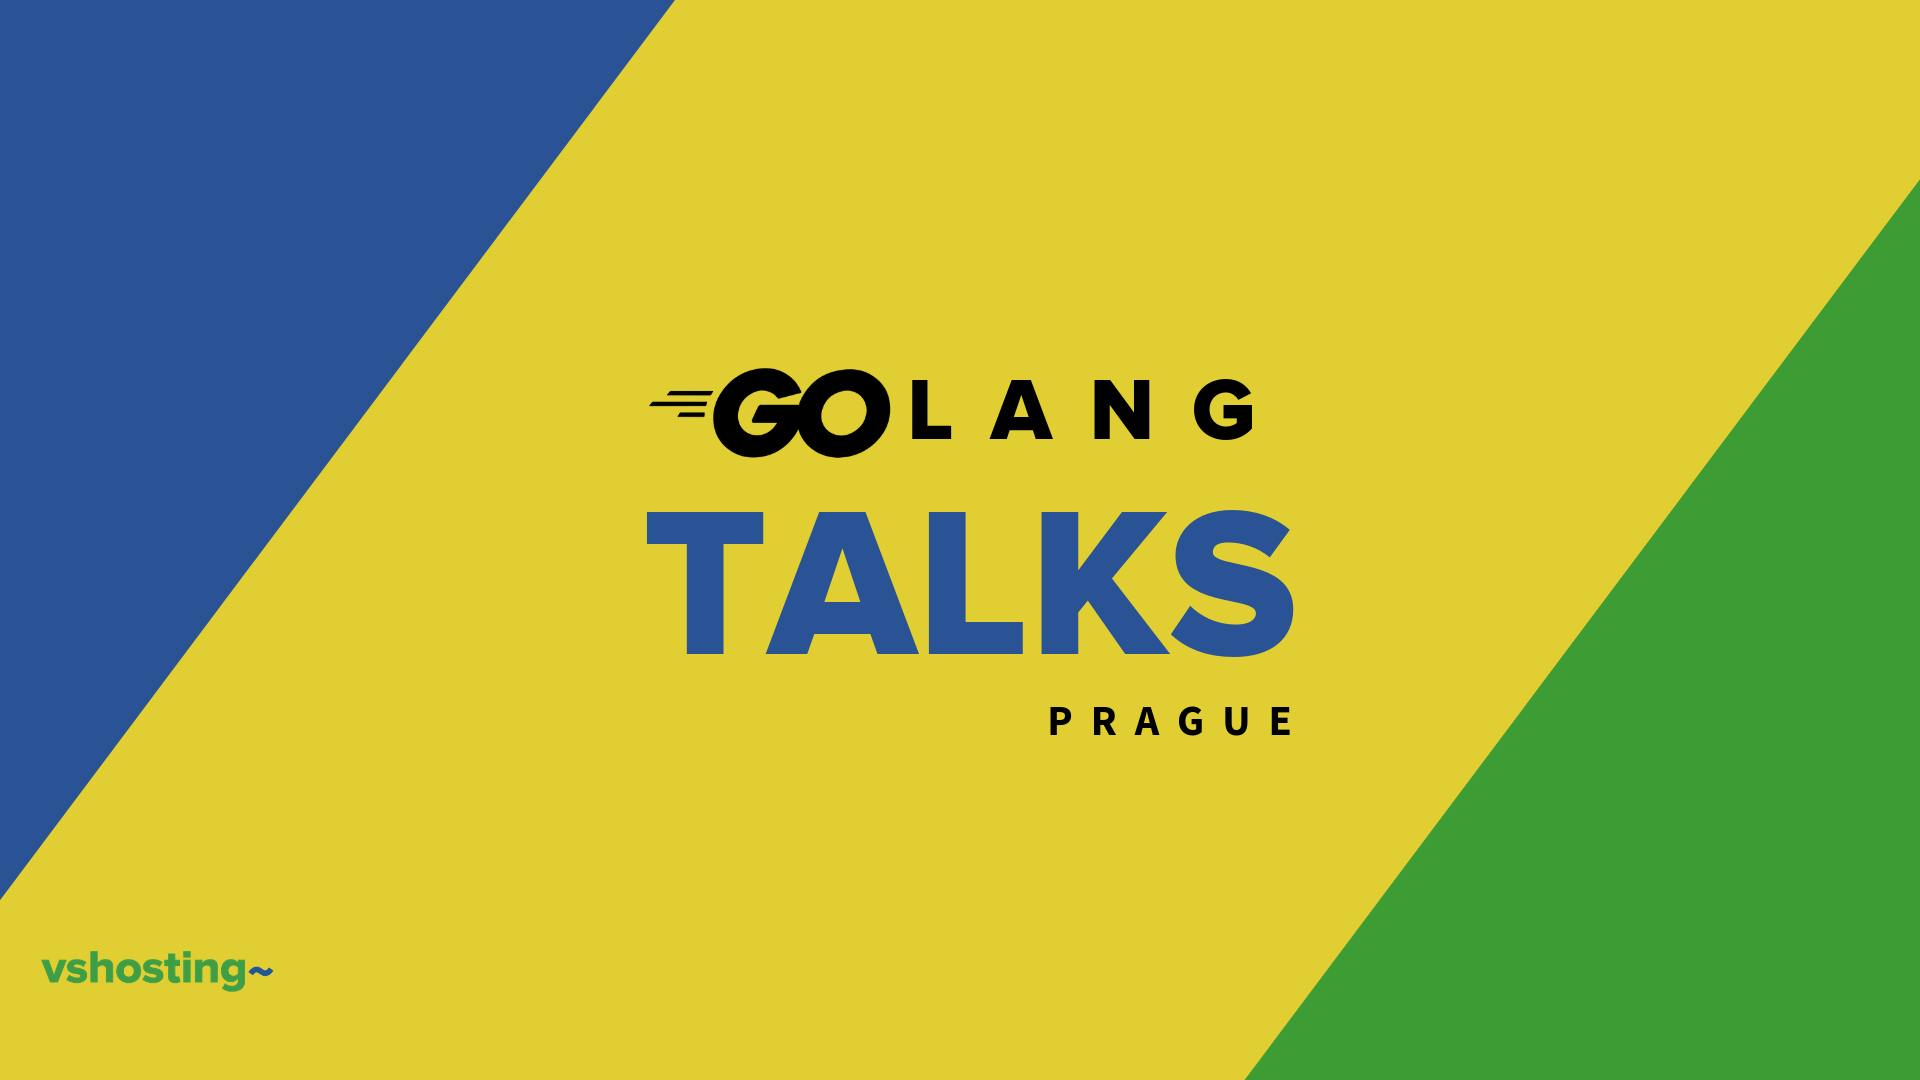 Golang Talks Prague, Vol. 1